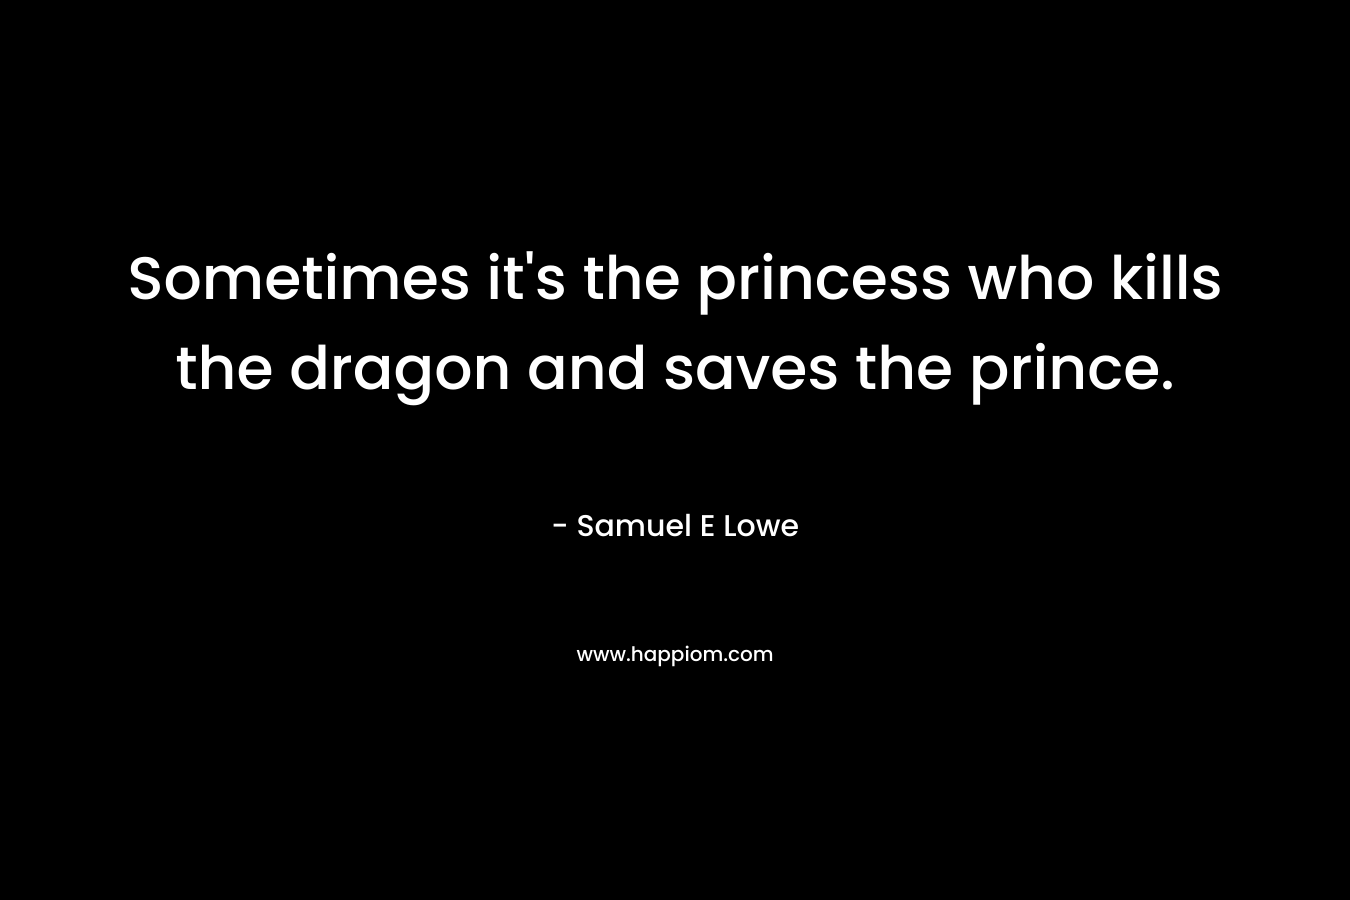 Sometimes it's the princess who kills the dragon and saves the prince.